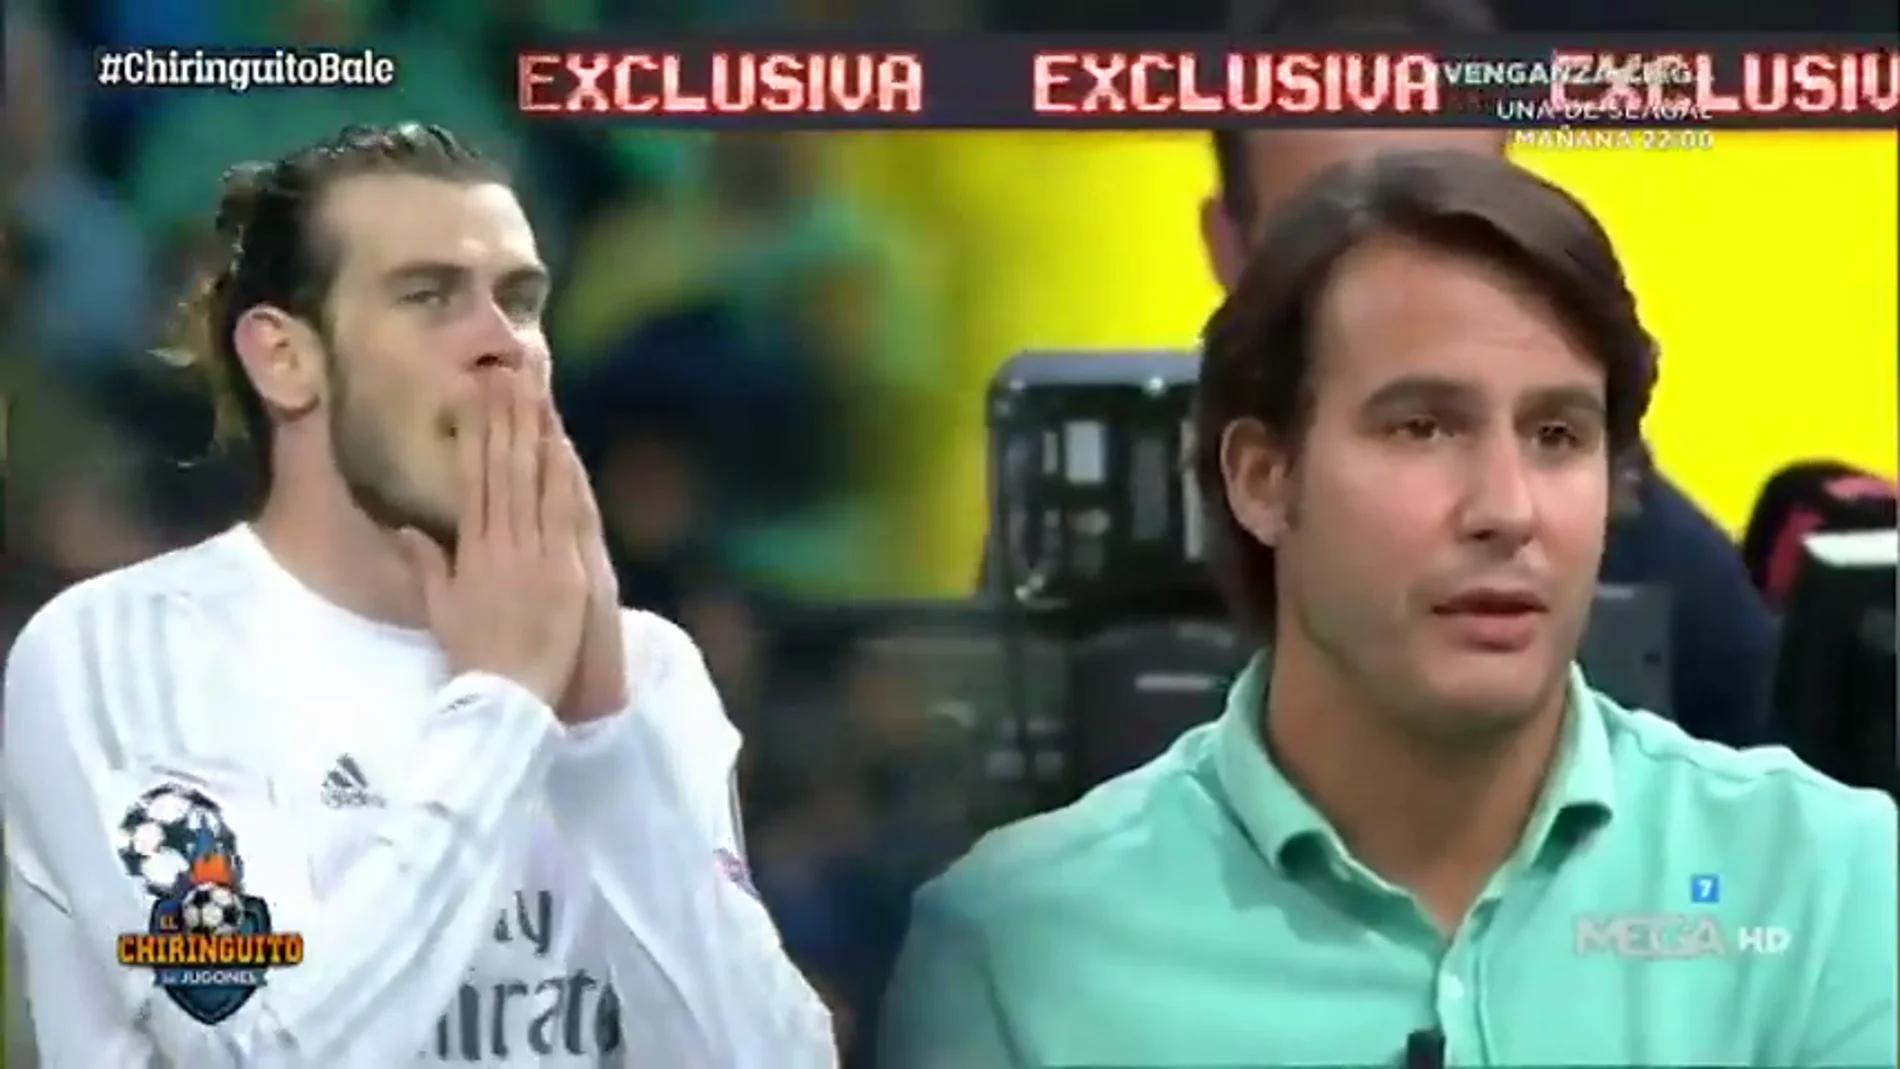 Exclusiva de Juanfe Sanz: "Bale no se ha despedido de todos sus compañeros"